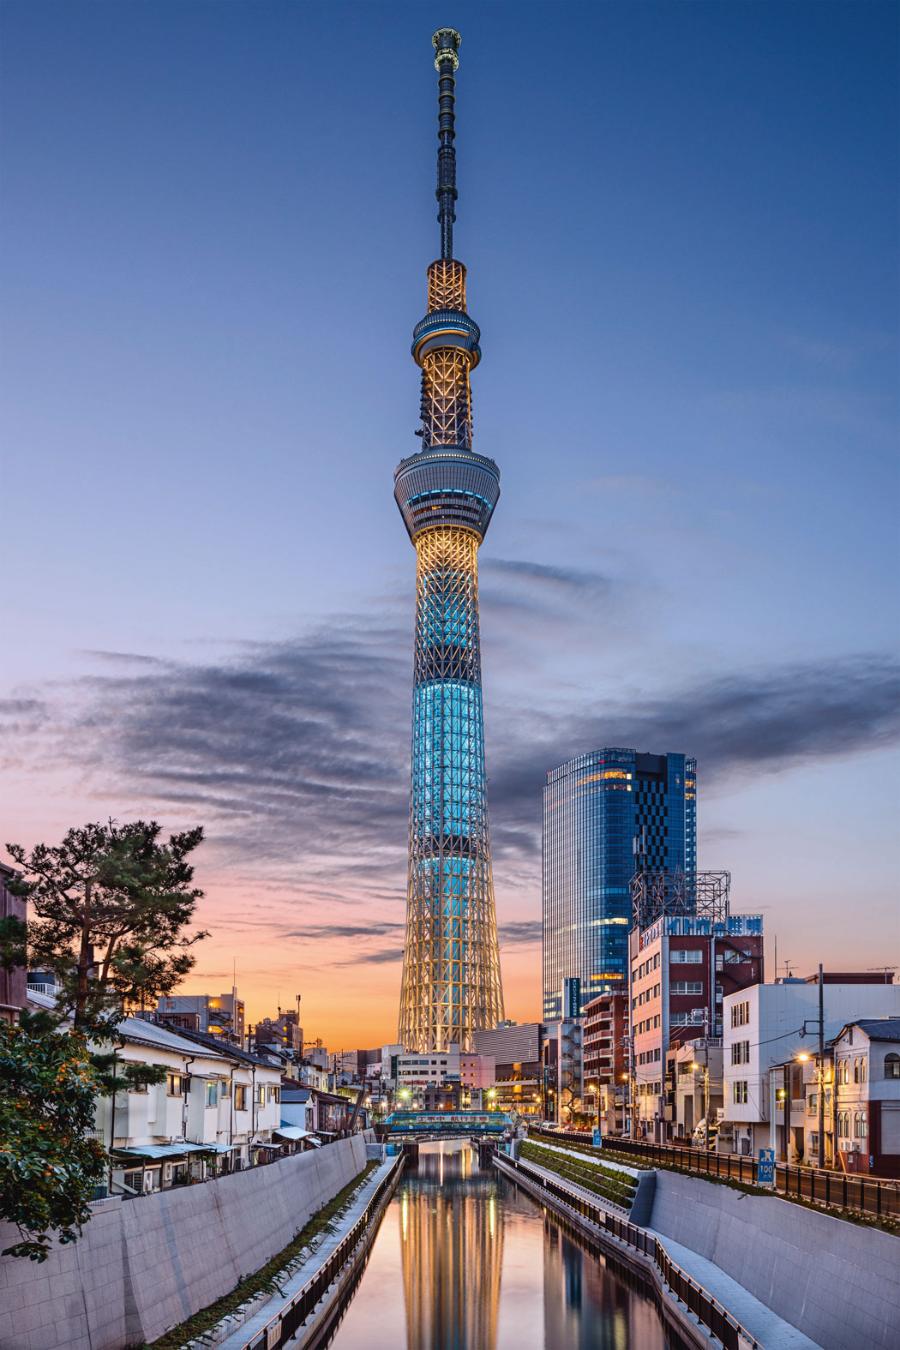 Inny rekord Japończyków to najwyższa wieża telewizyjna świata. Wysoka na 634 m konstrukcja zabezpieczona jest siecią stalowych rur.